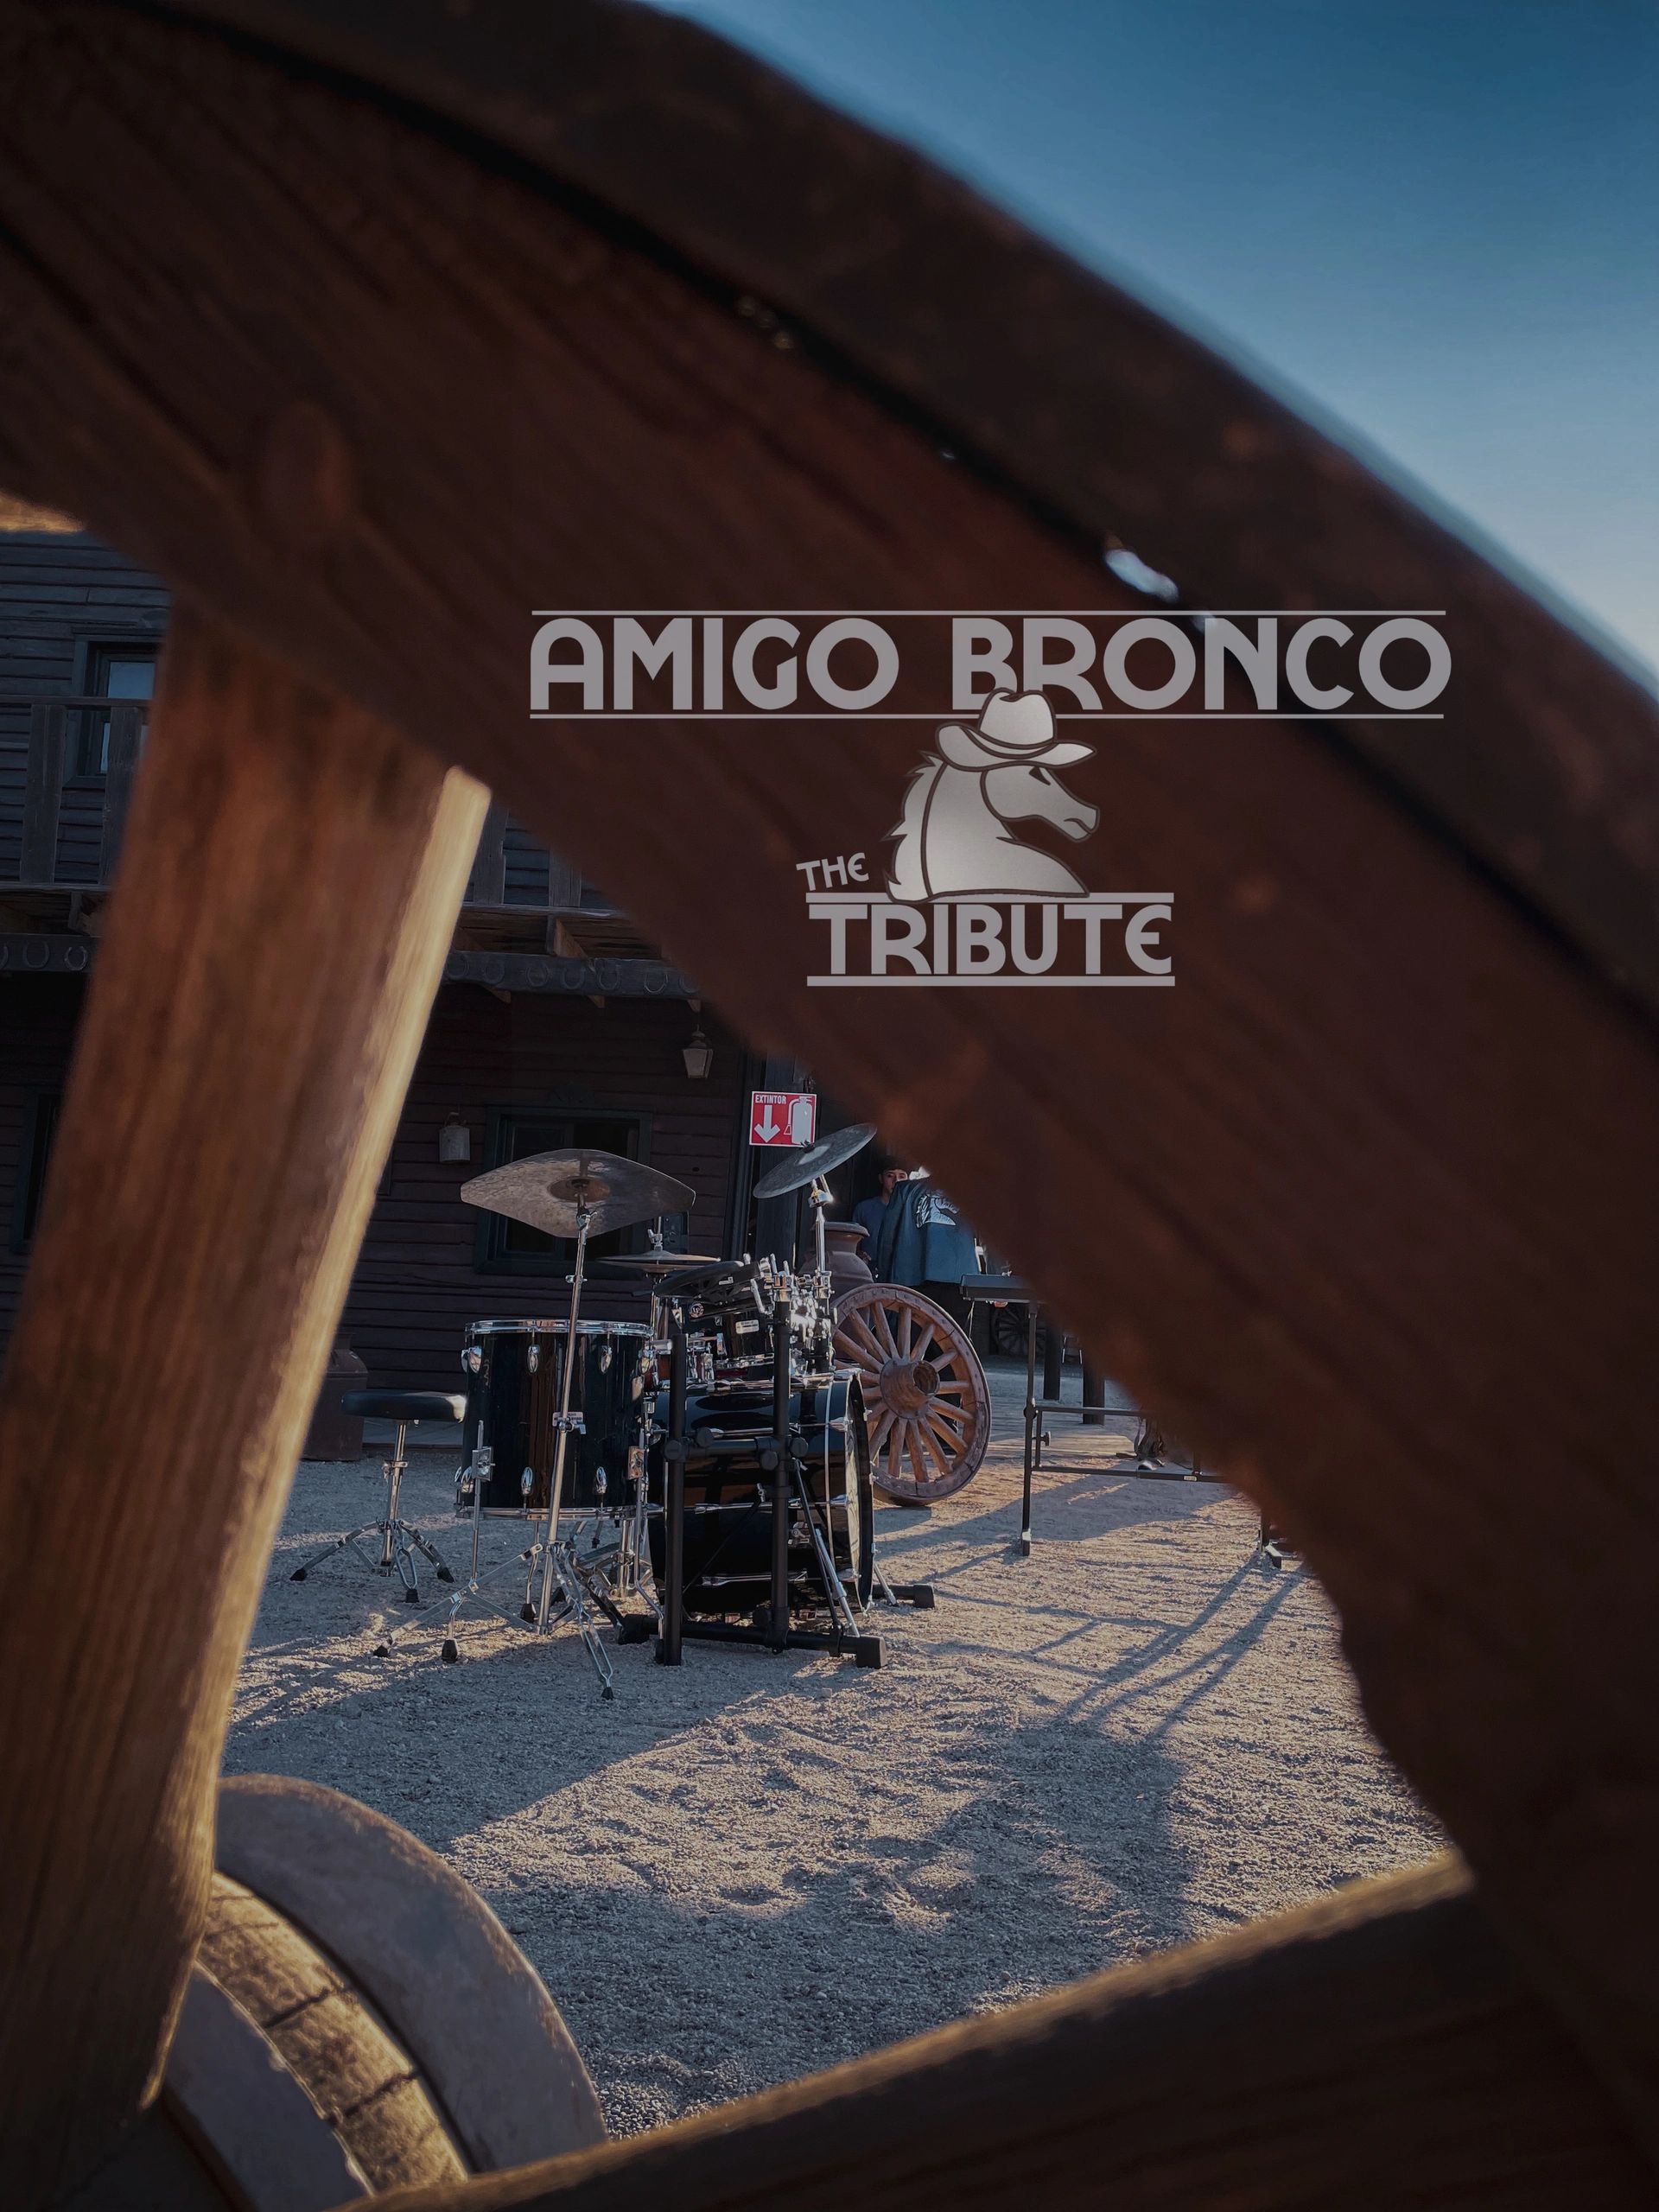 About | Amigo Bronco The Tribute/El tributo